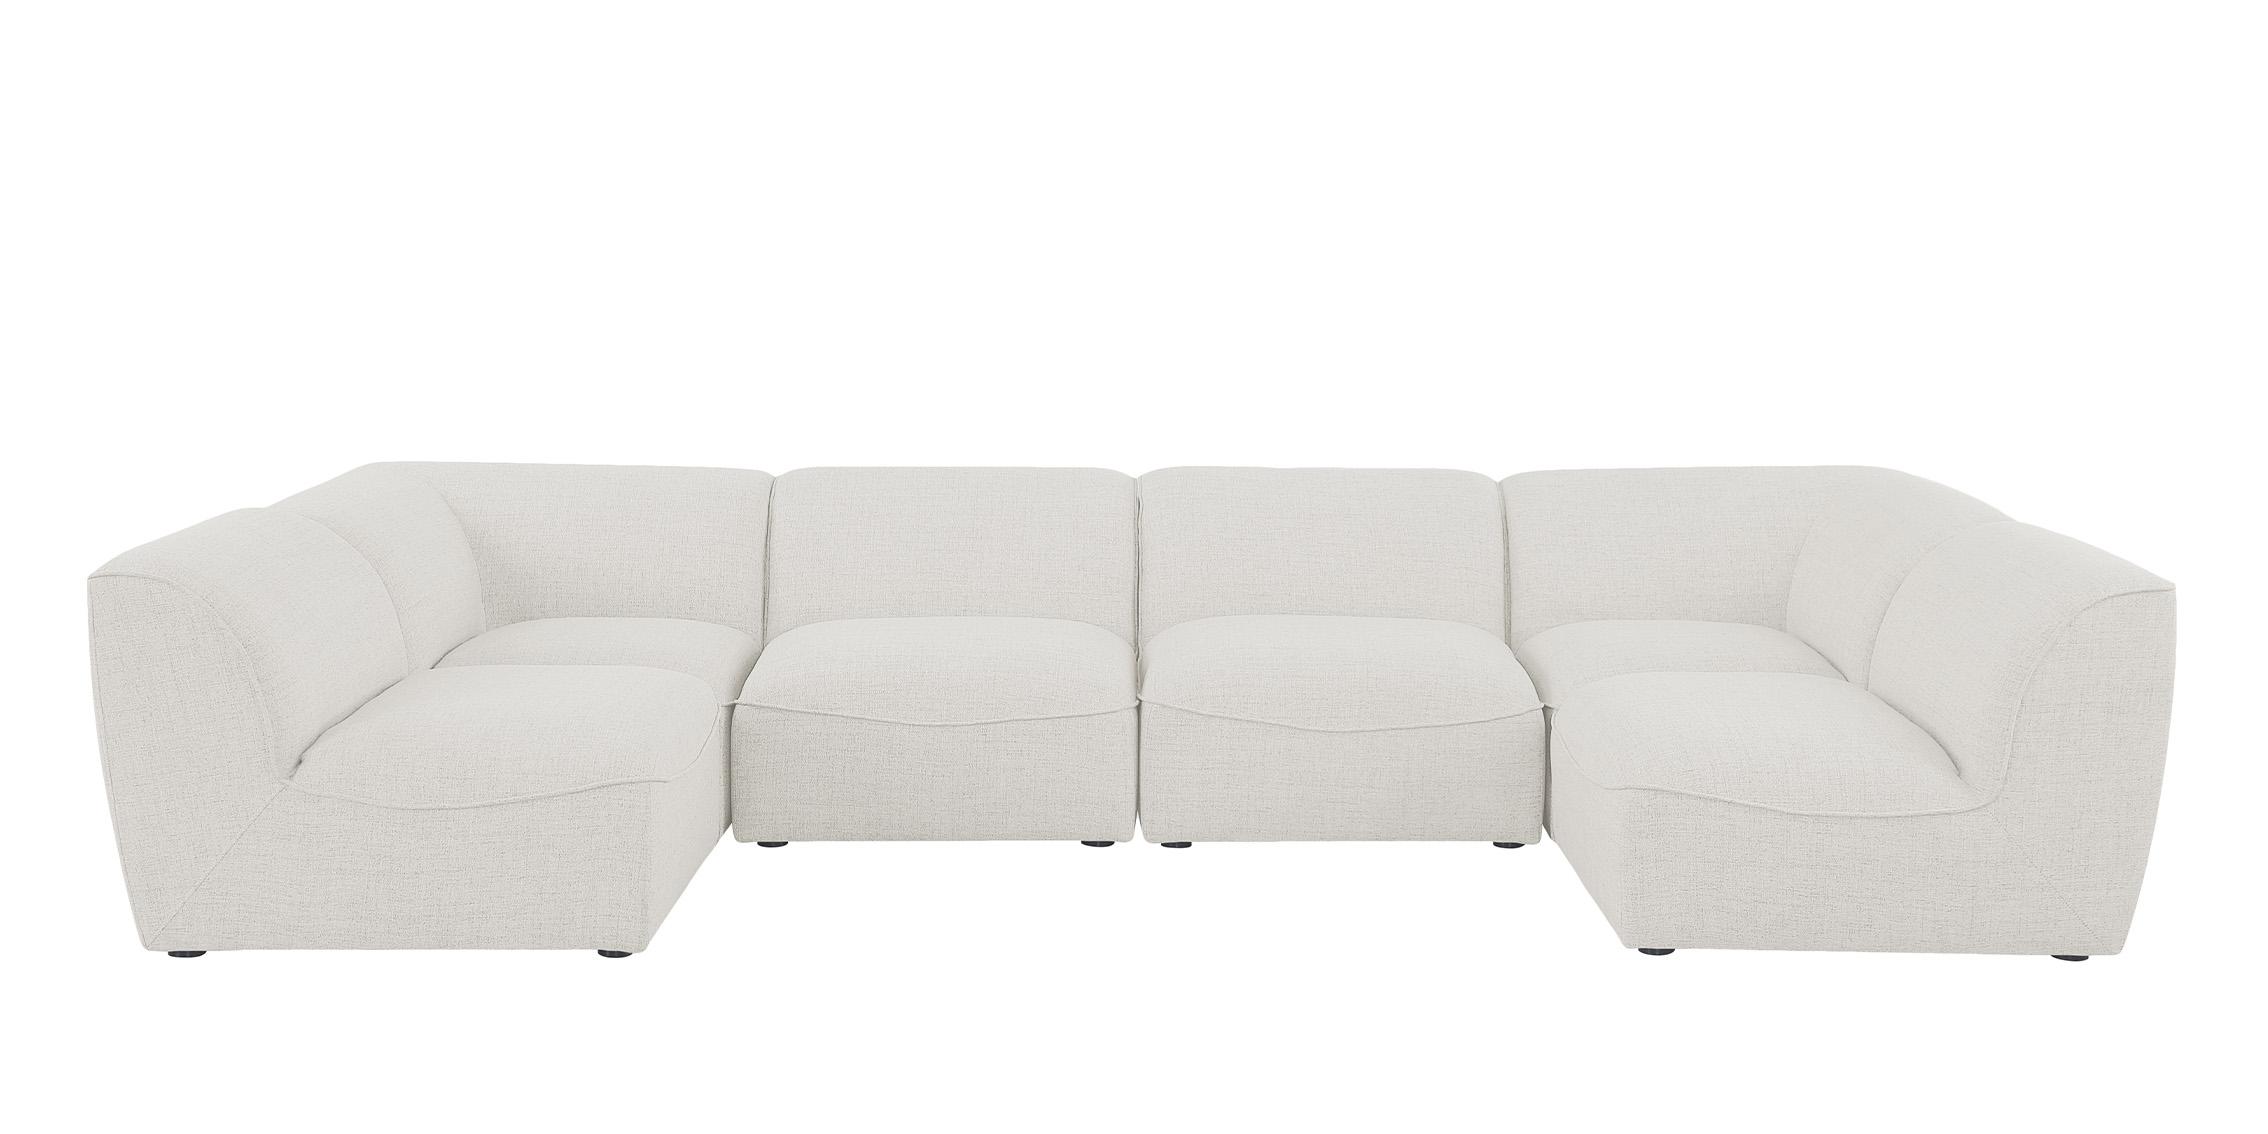 

    
Meridian Furniture MIRAMAR 683Cream-Sec6D Modular Sectional Sofa Cream 683Cream-Sec6D
